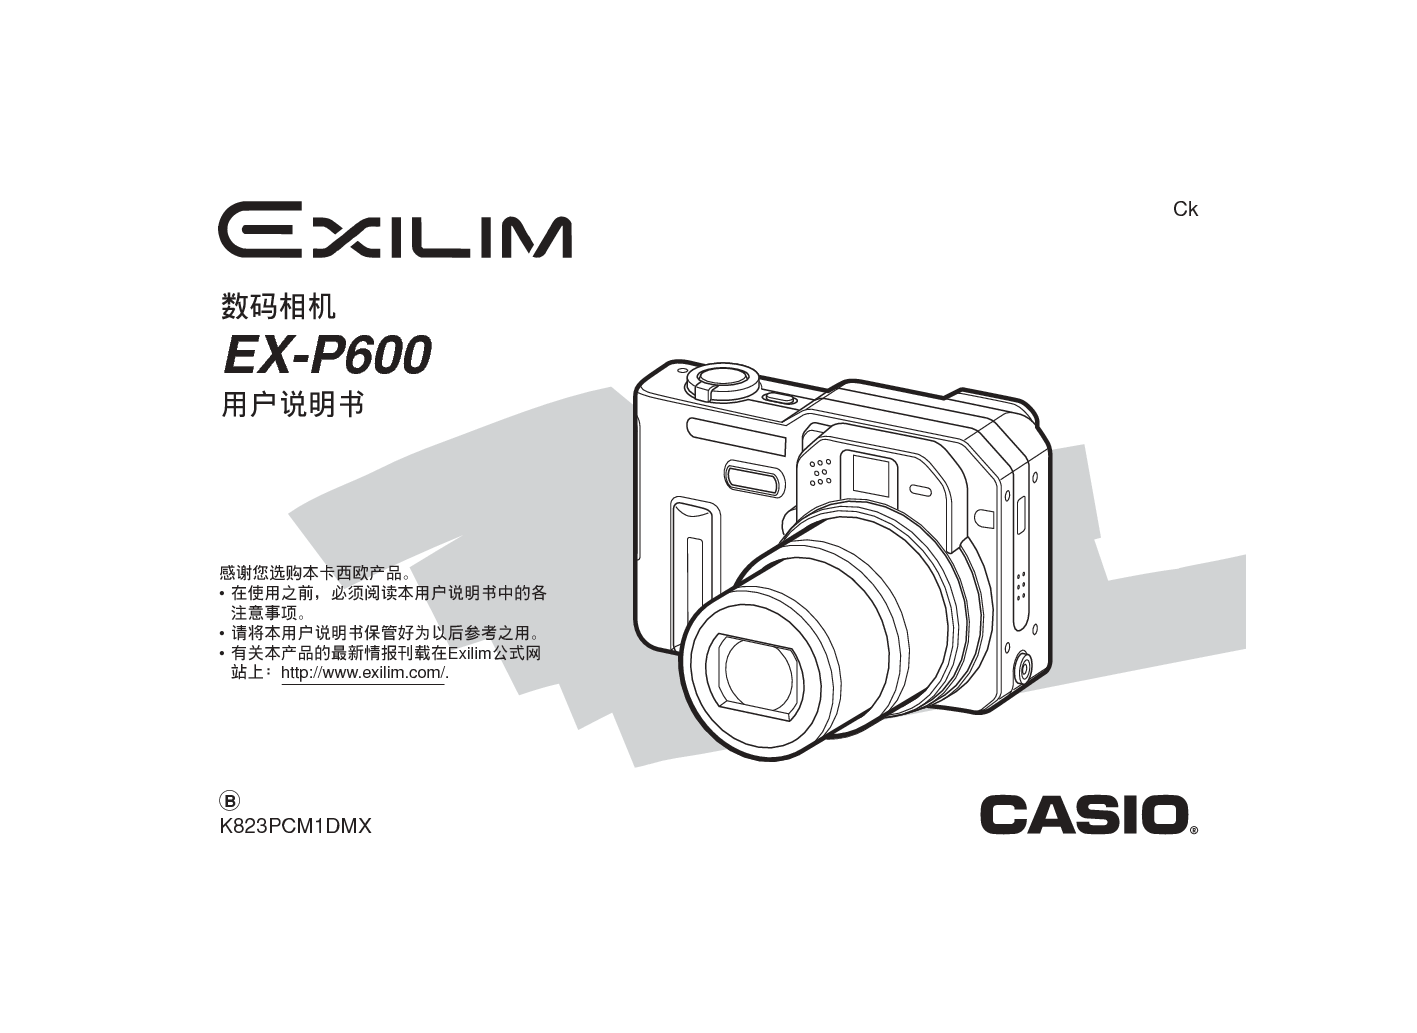 卡西欧 Casio EX-P600 说明书 封面